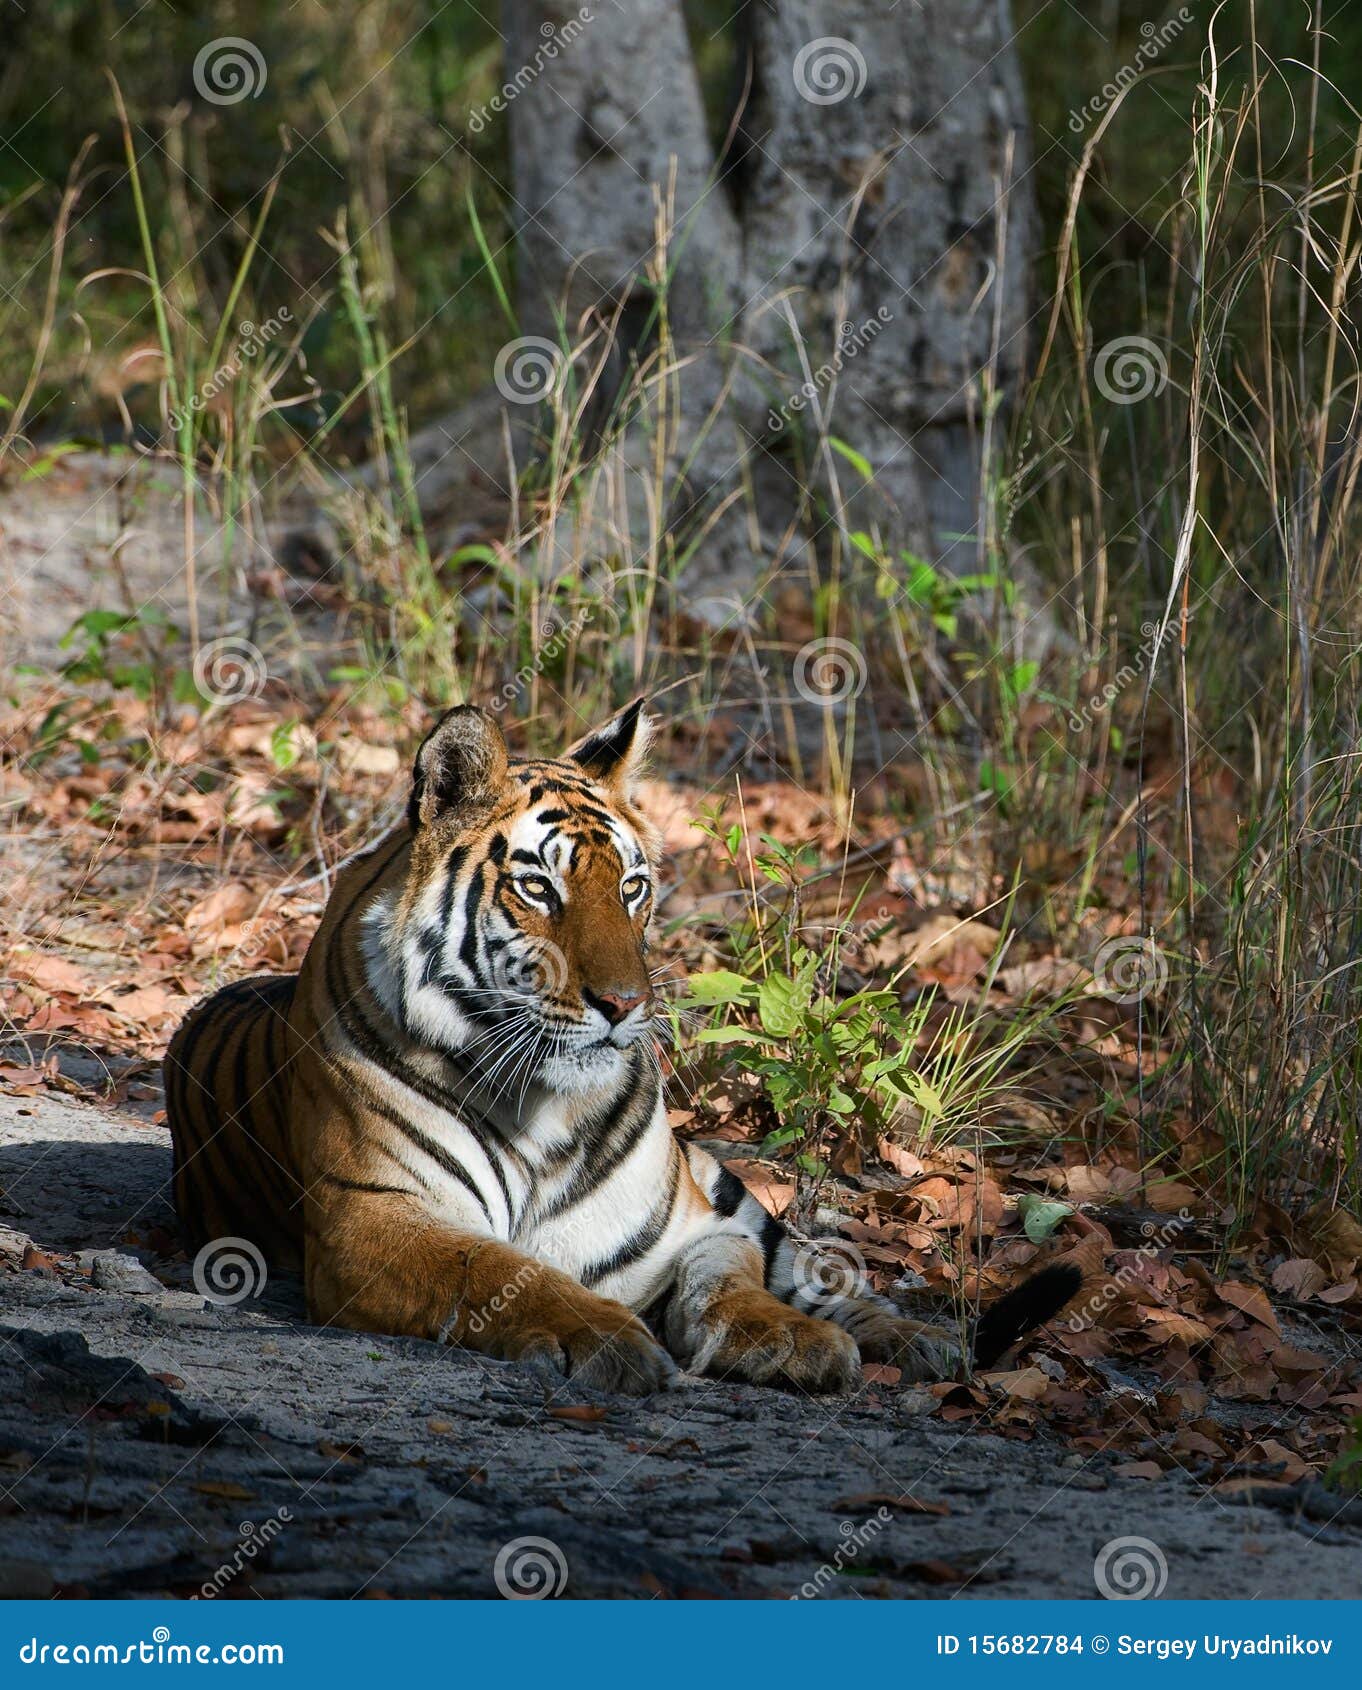 tigress.